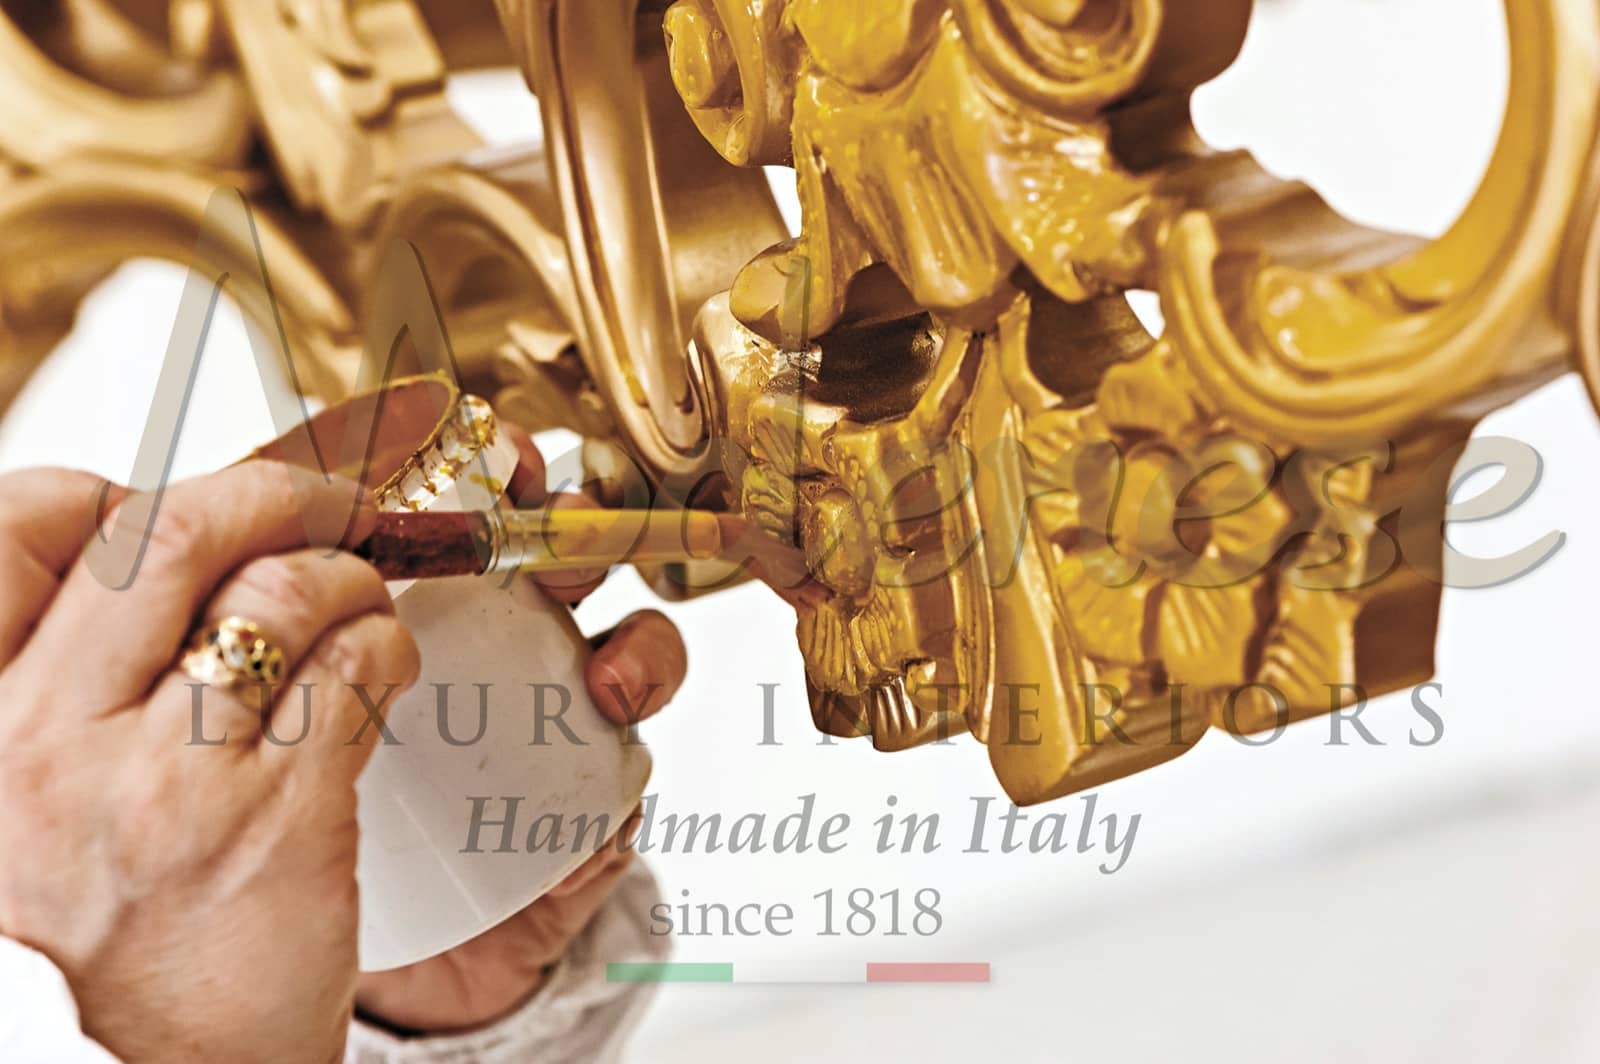 Application de feuille d'or 24 carats de luxe maîtres artisanaux fabrication de meubles italiens pièces d'art personnalisées détails de design d'intérieur villa royale palais résidentiel luxueux décoration dorée